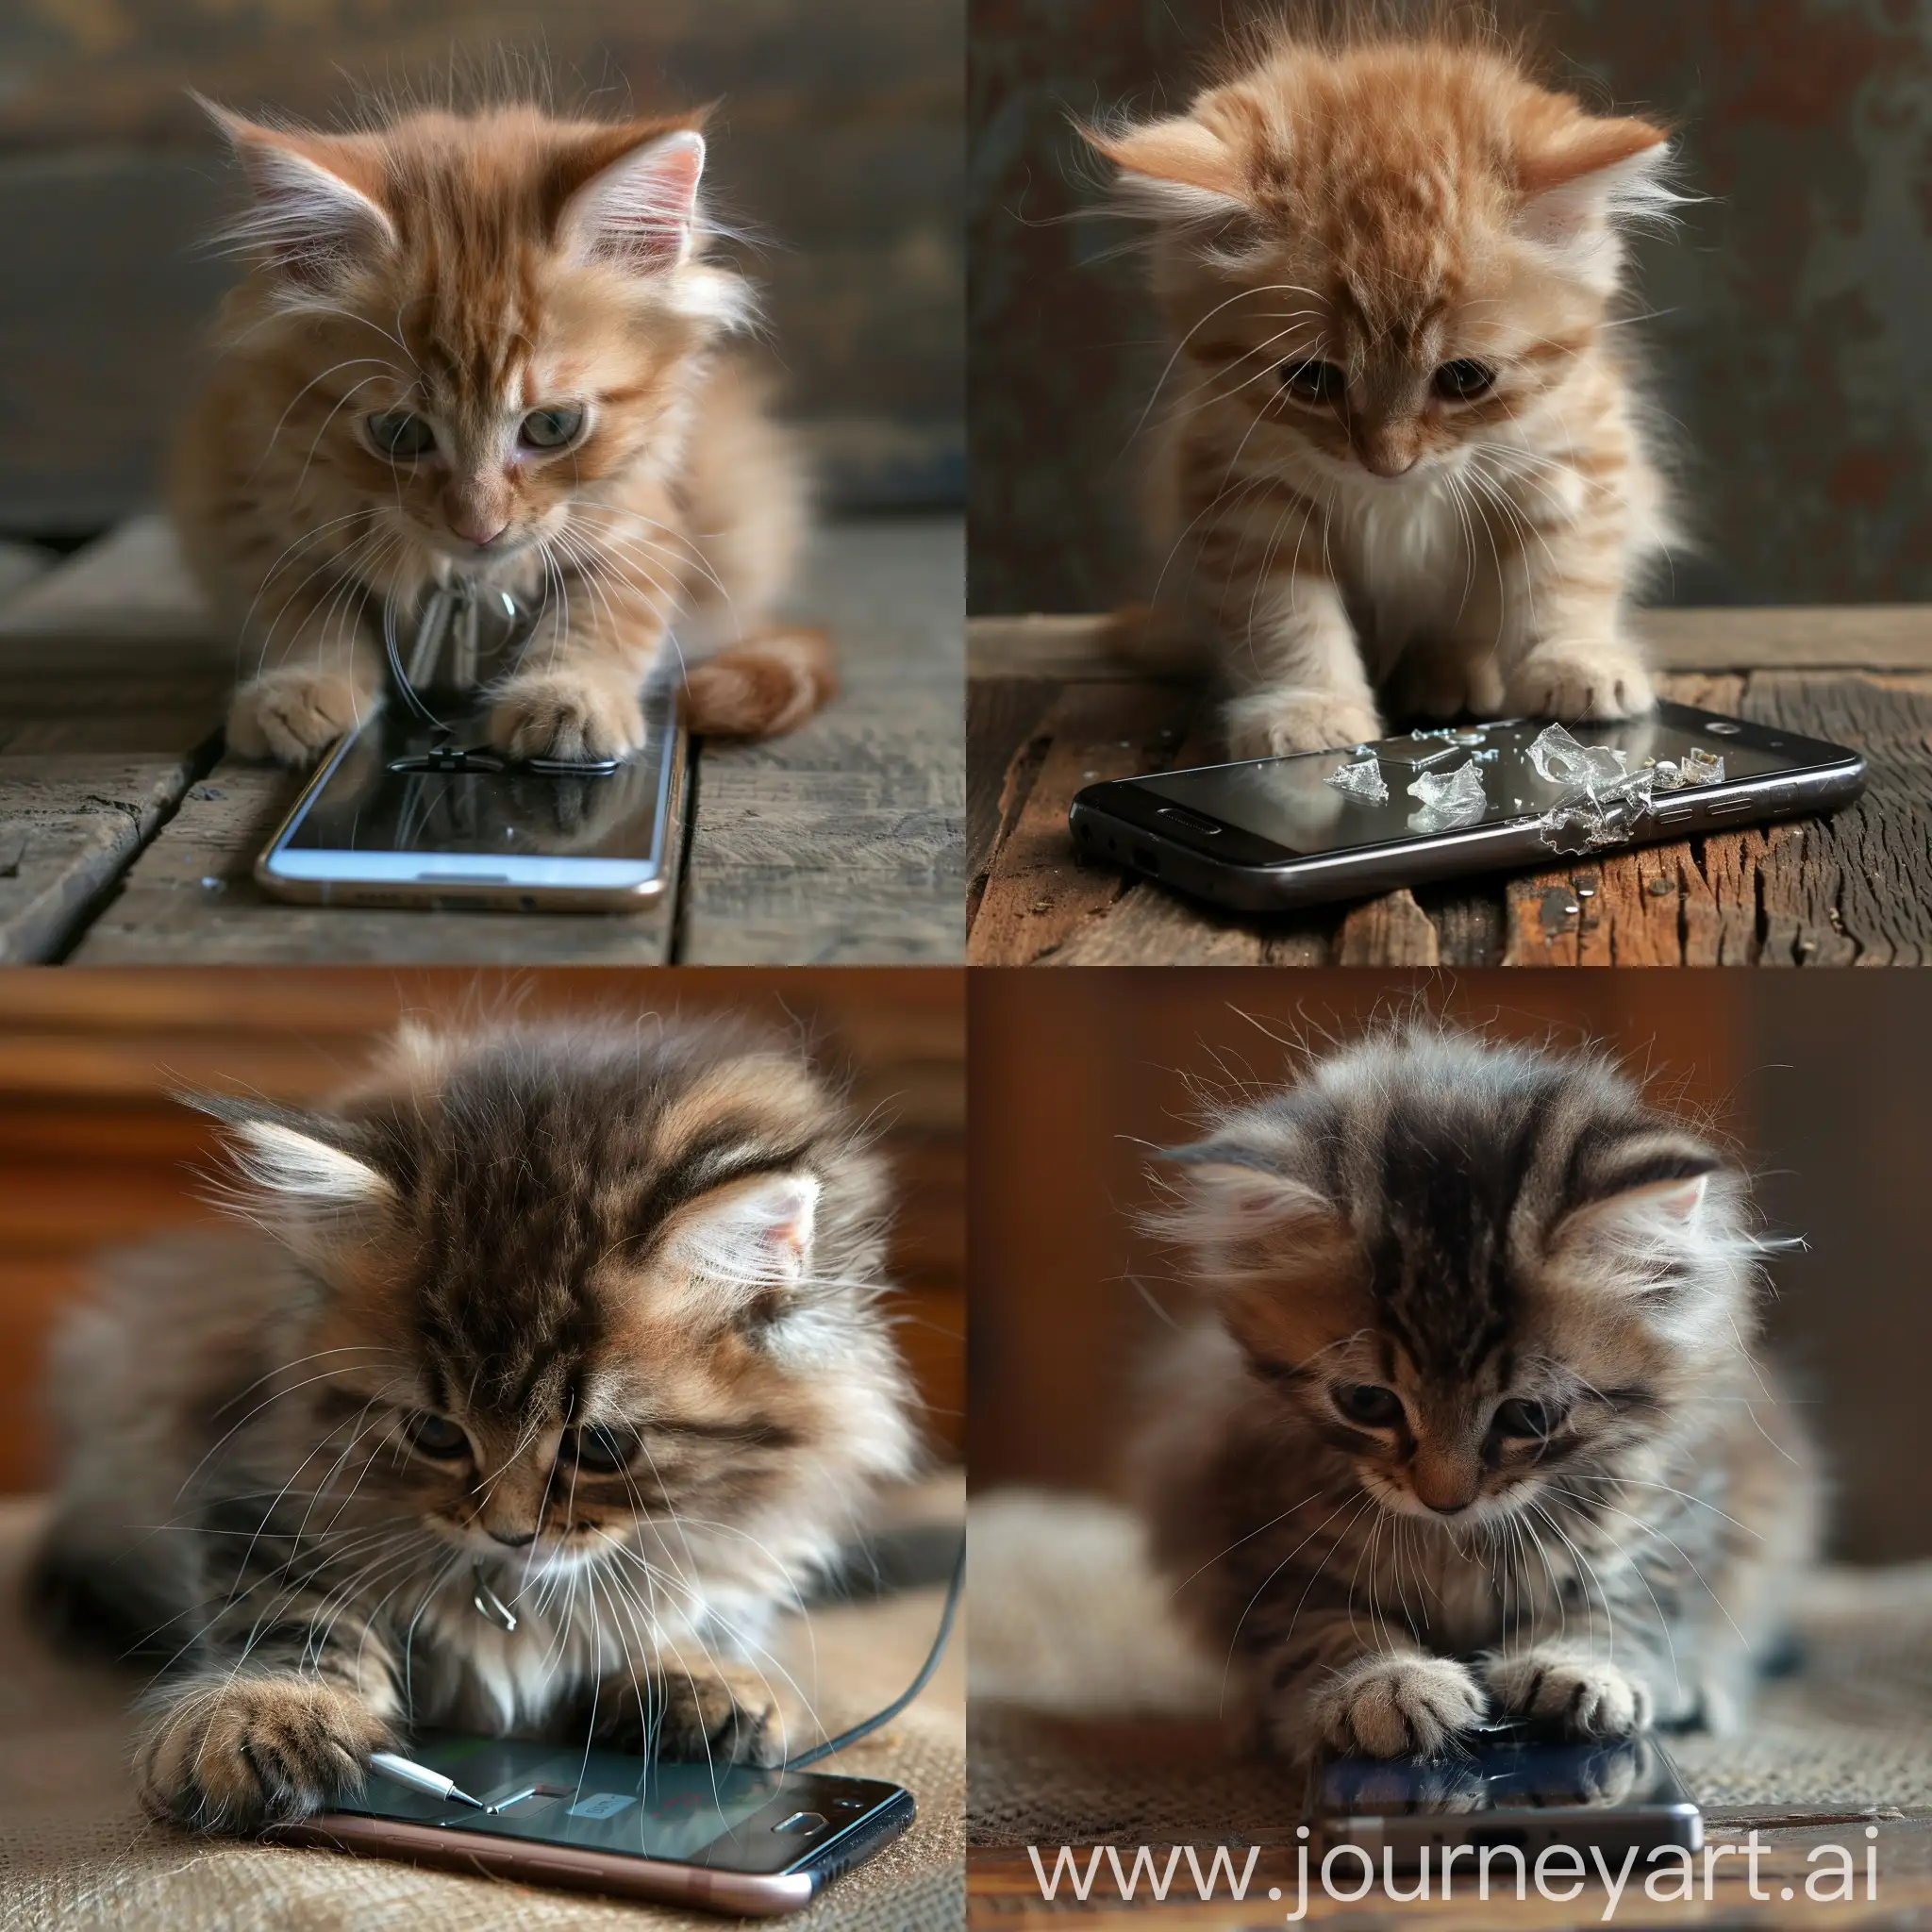 Adorable-Kitten-Fixing-Smartphone